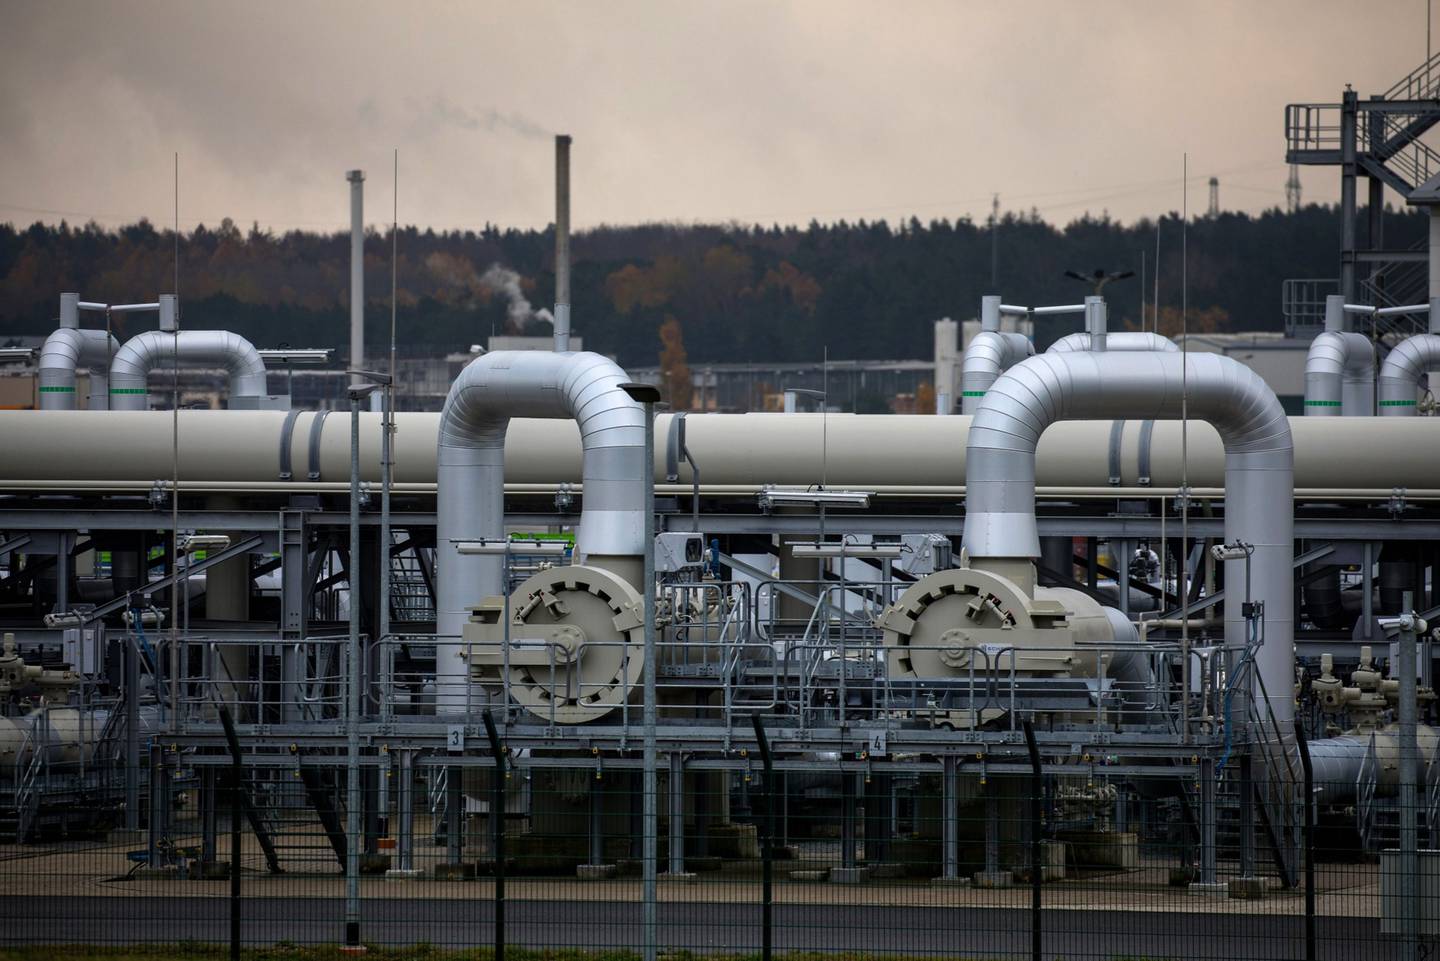 El controvertido gasoducto de gas natural podría ayudar a aliviar la crisis energética europea.dfd